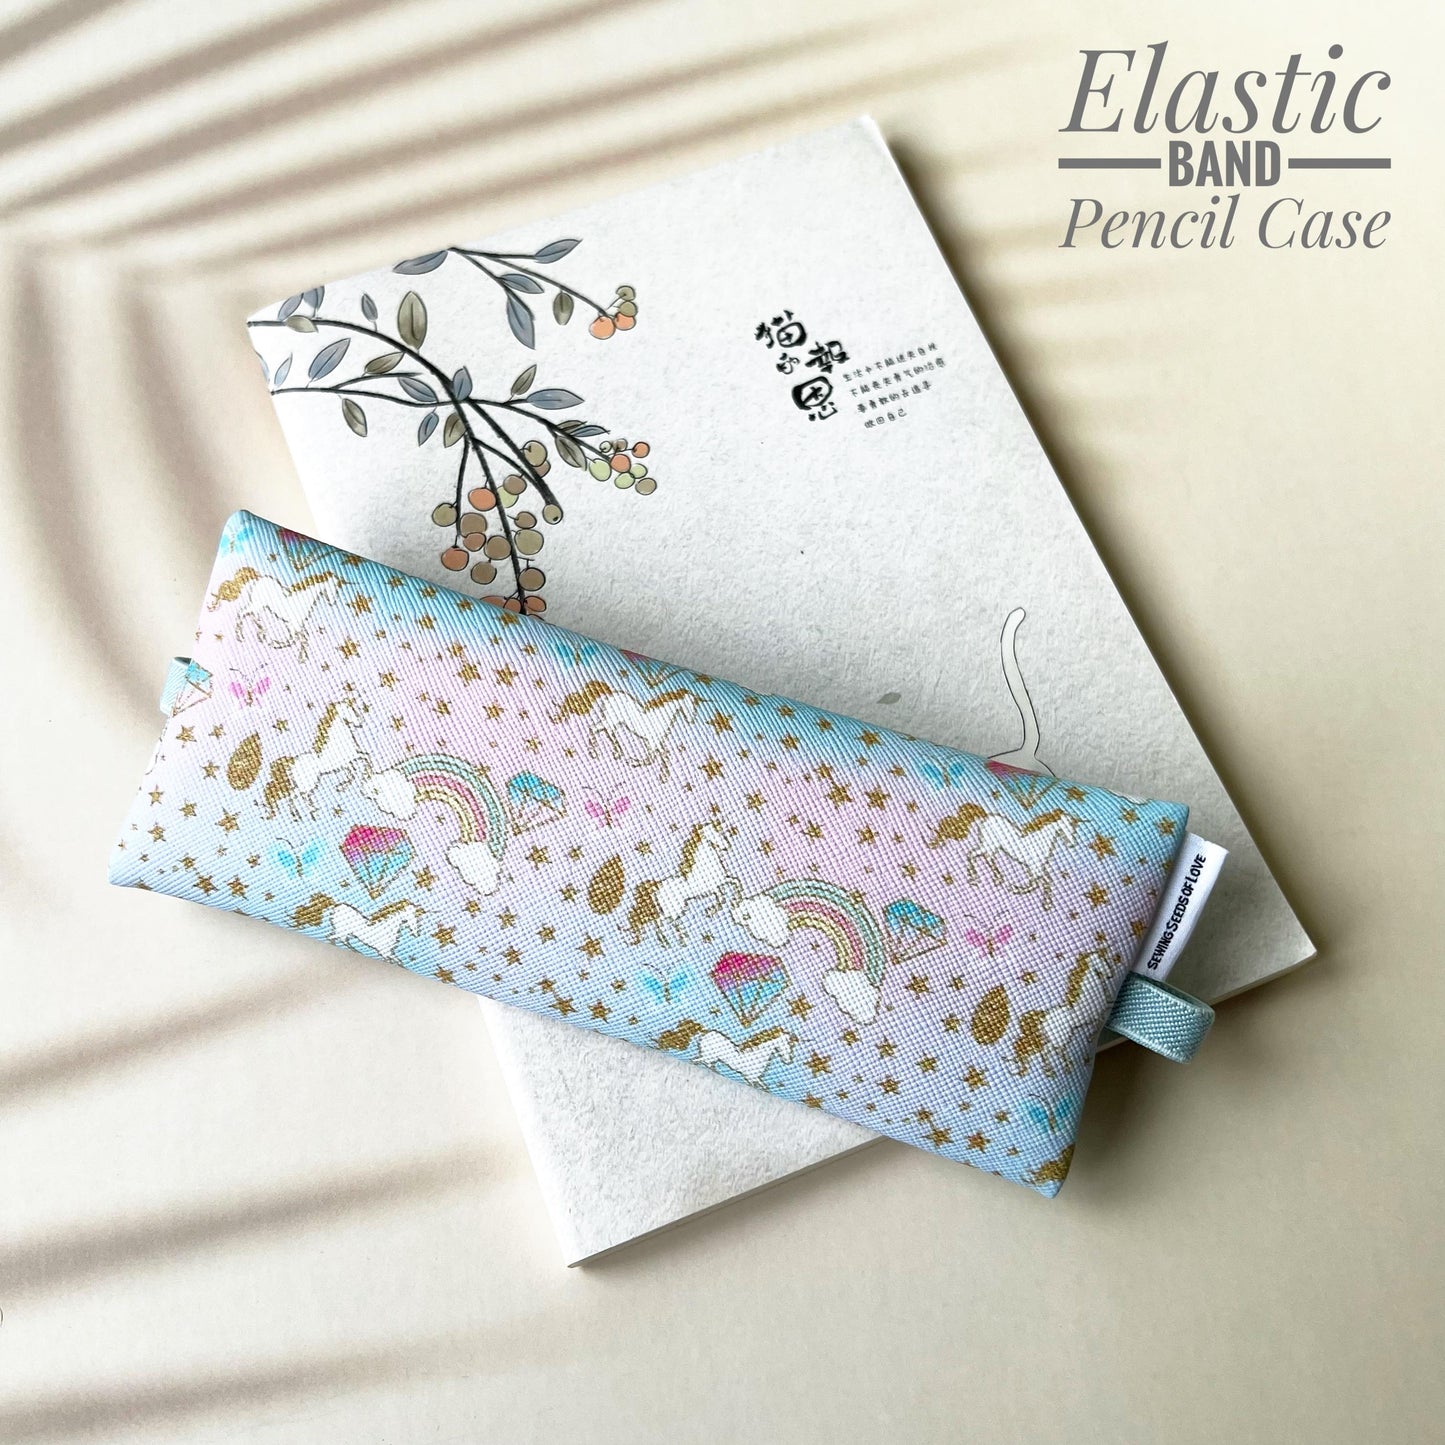 Elastic Band Pencil Case - EBPC31